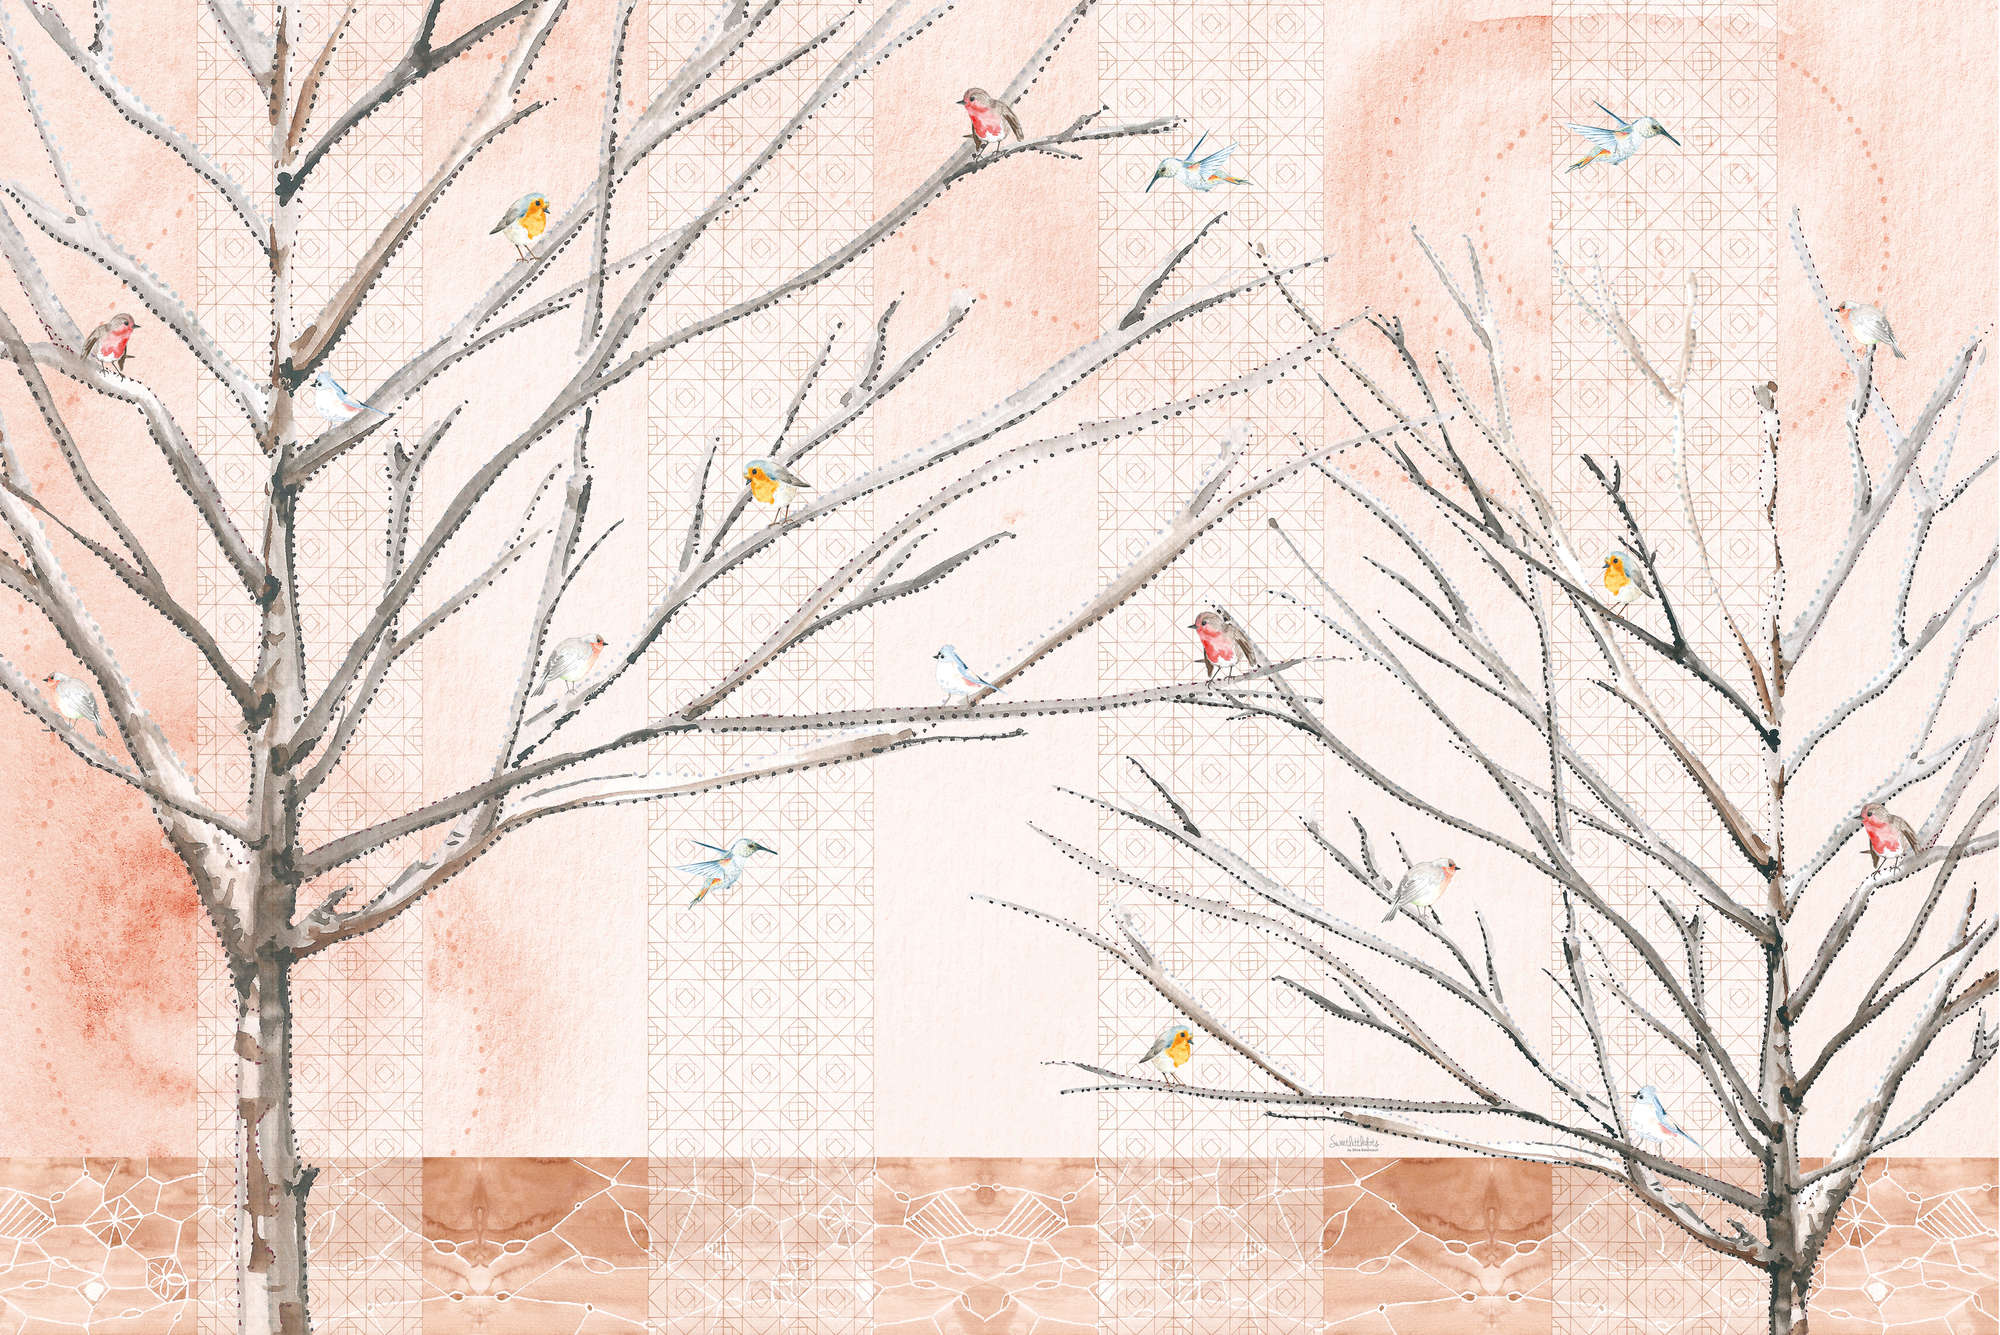             Papier peint artistique Arbres avec oiseaux beige et marron sur intissé structuré
        